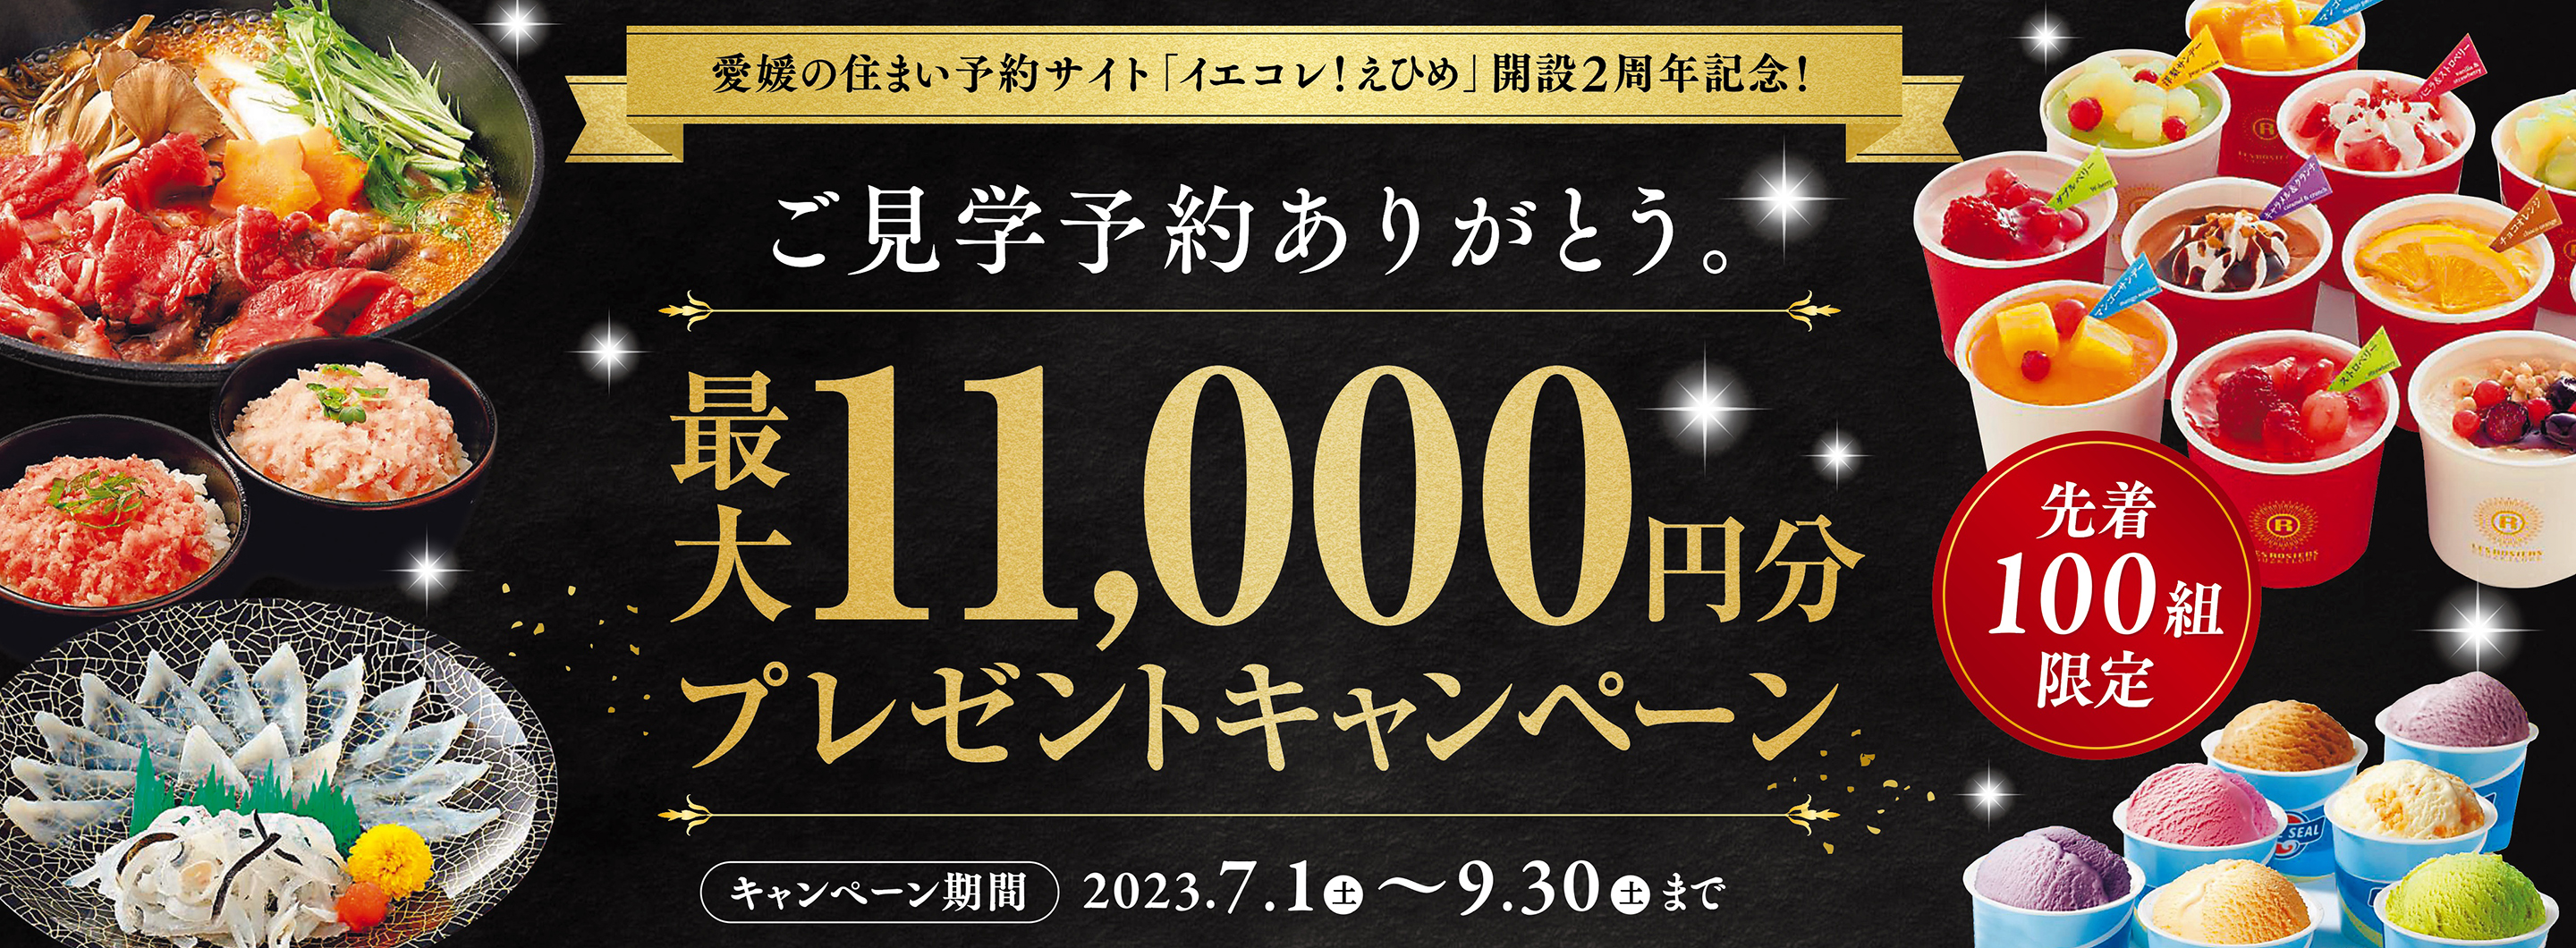 最大11,000円分プレゼントキャンペーン